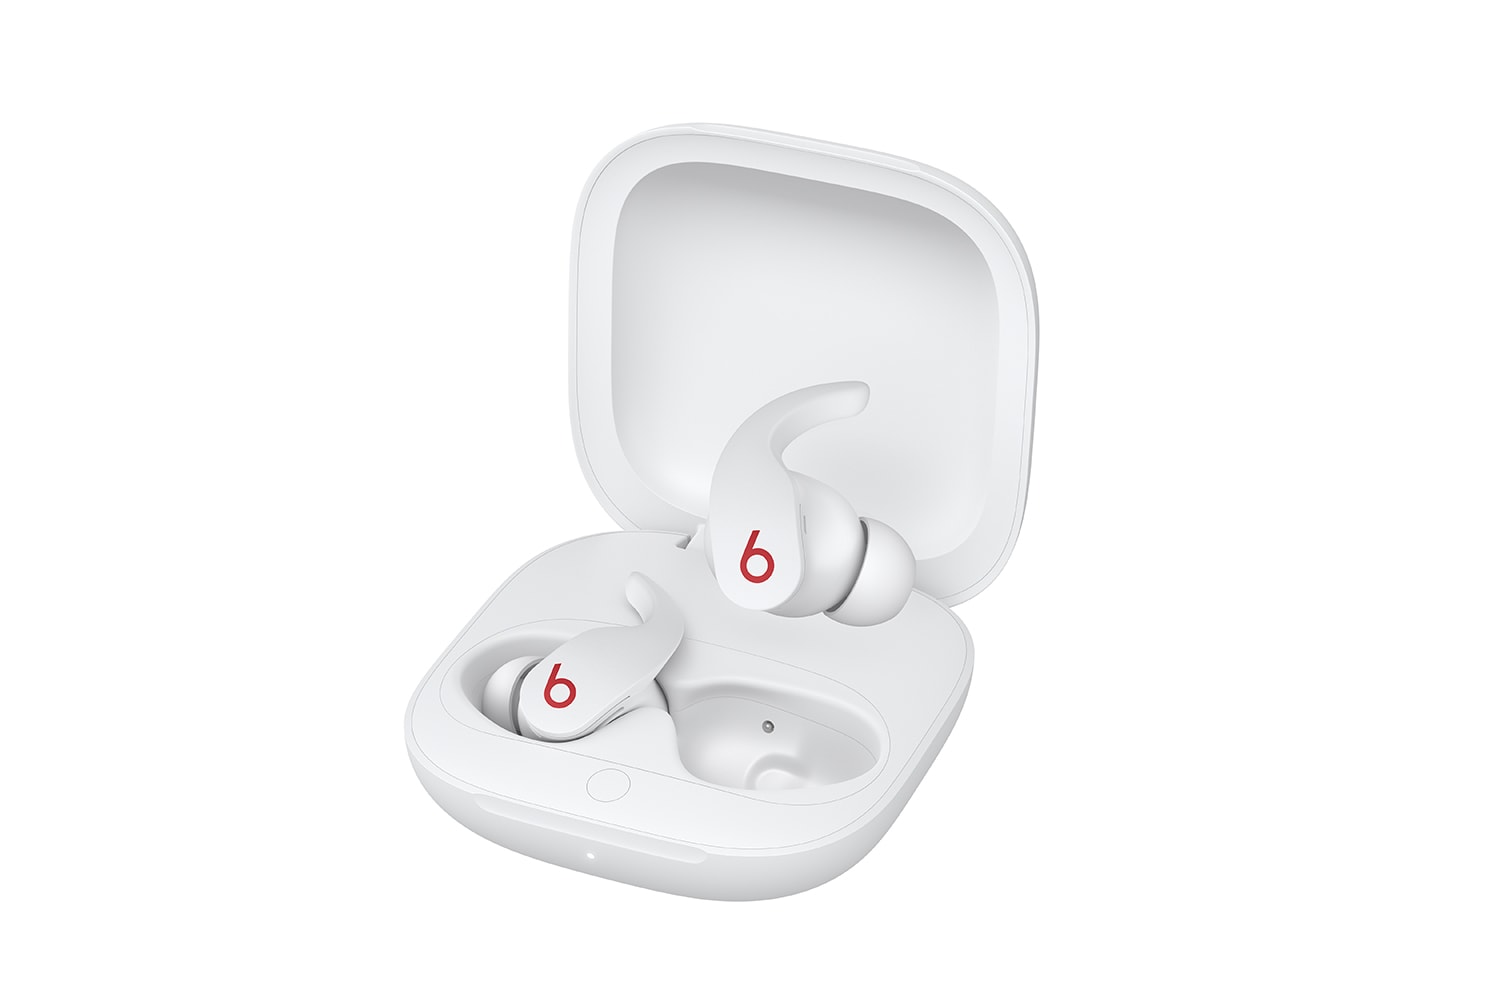 Beats 全新入耳式耳机 Fit Pro 正式登场